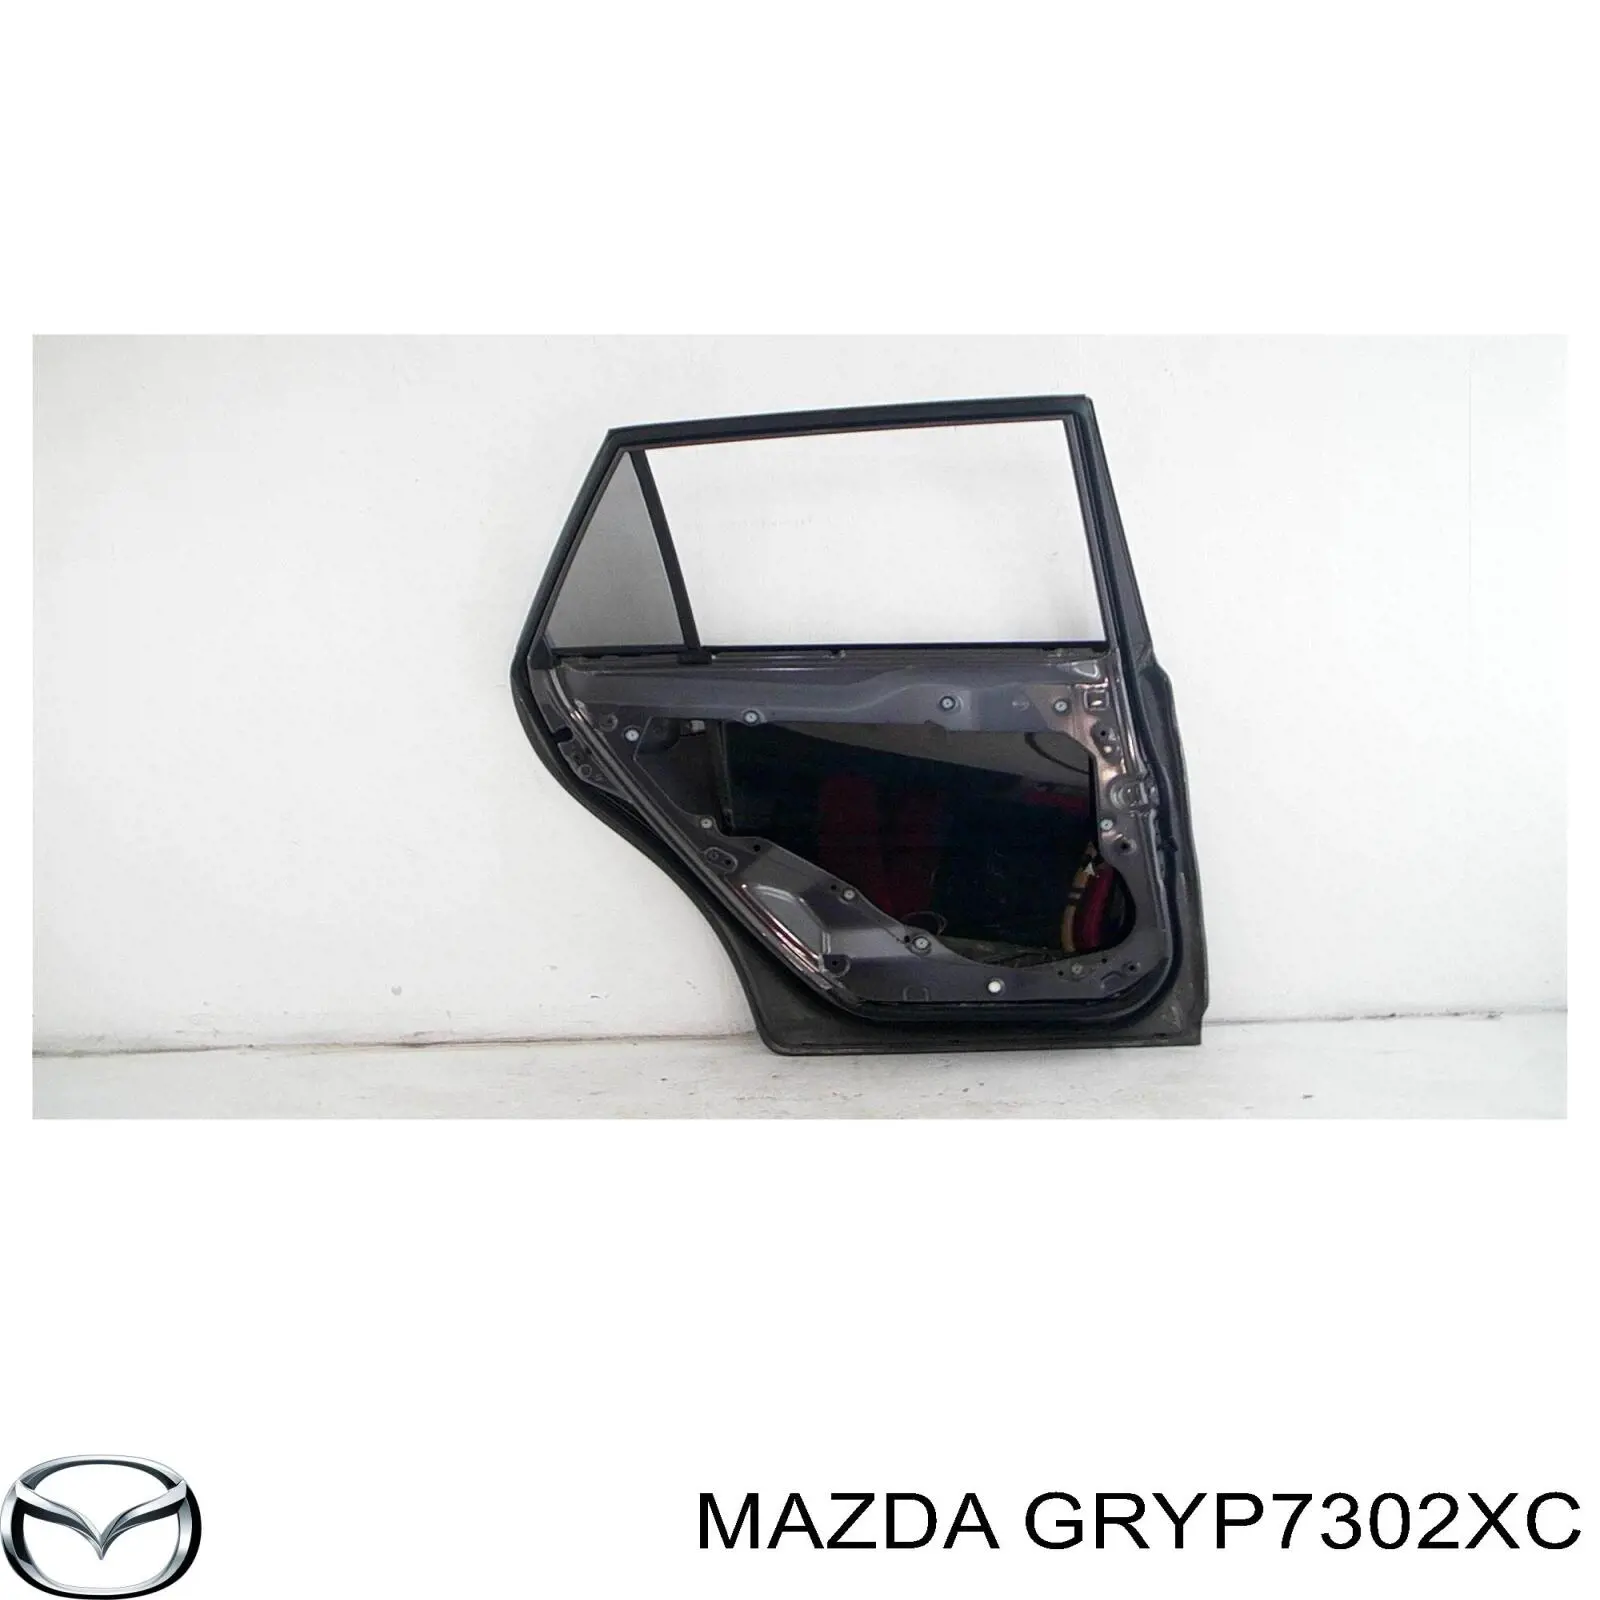 GRYP7302XC Mazda дверь задняя левая